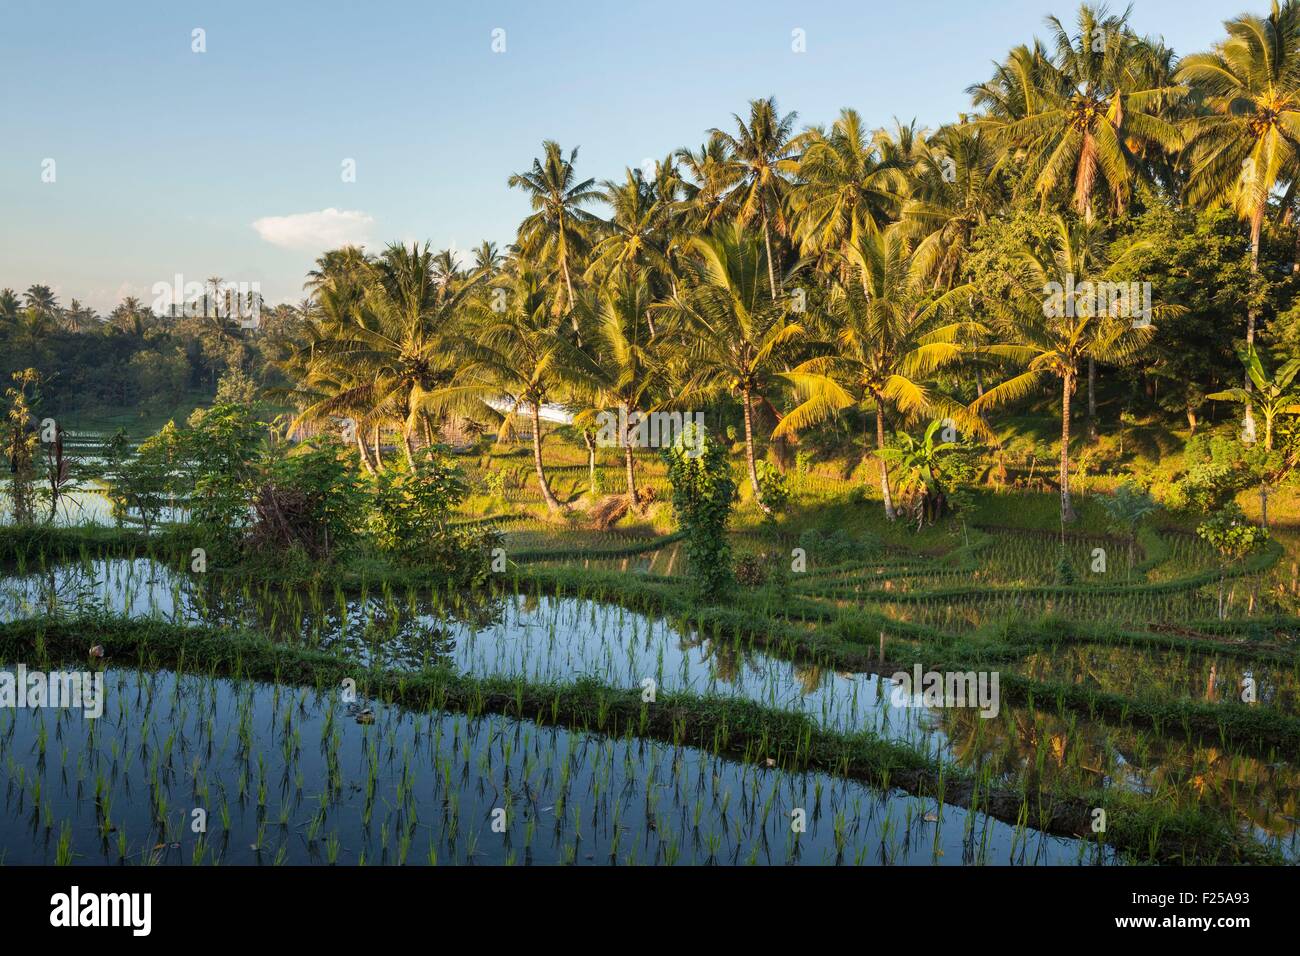 L'Indonésie, îles de la sonde, Lombok, Terrasse rizière Banque D'Images